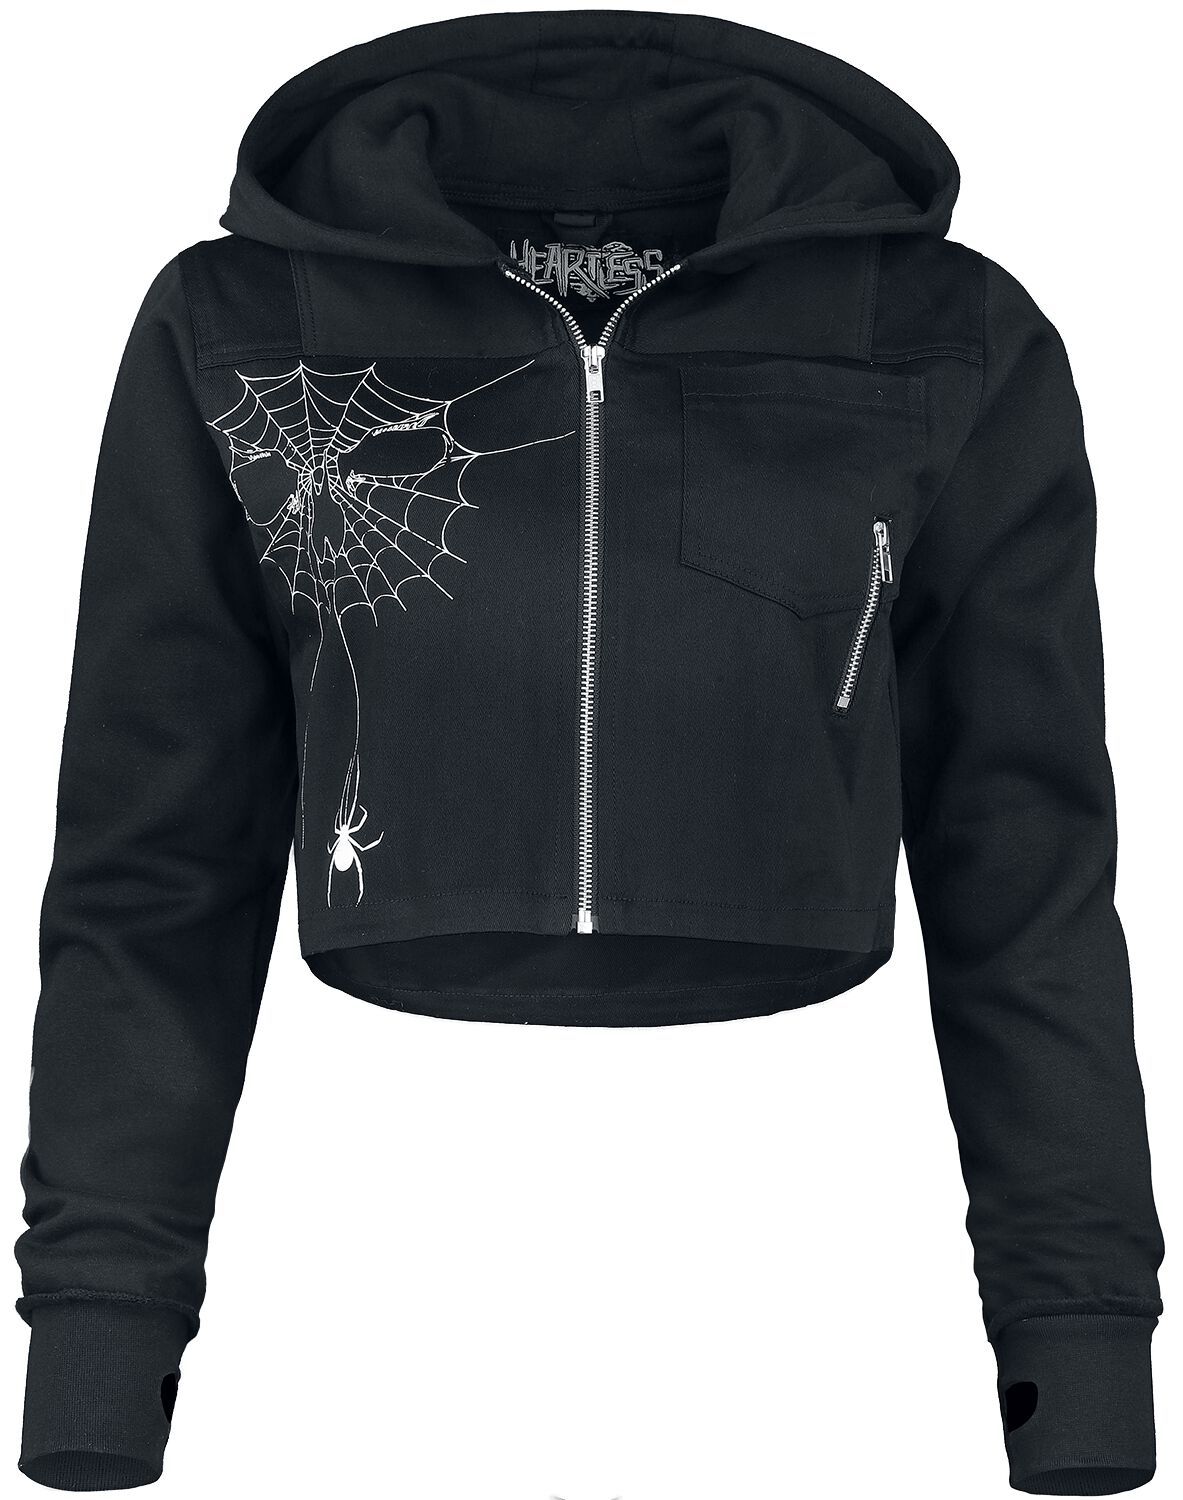 Heartless - Gothic Kapuzenjacke - Widow Maker Jacket - S bis XXL - für Damen - Größe M - schwarz